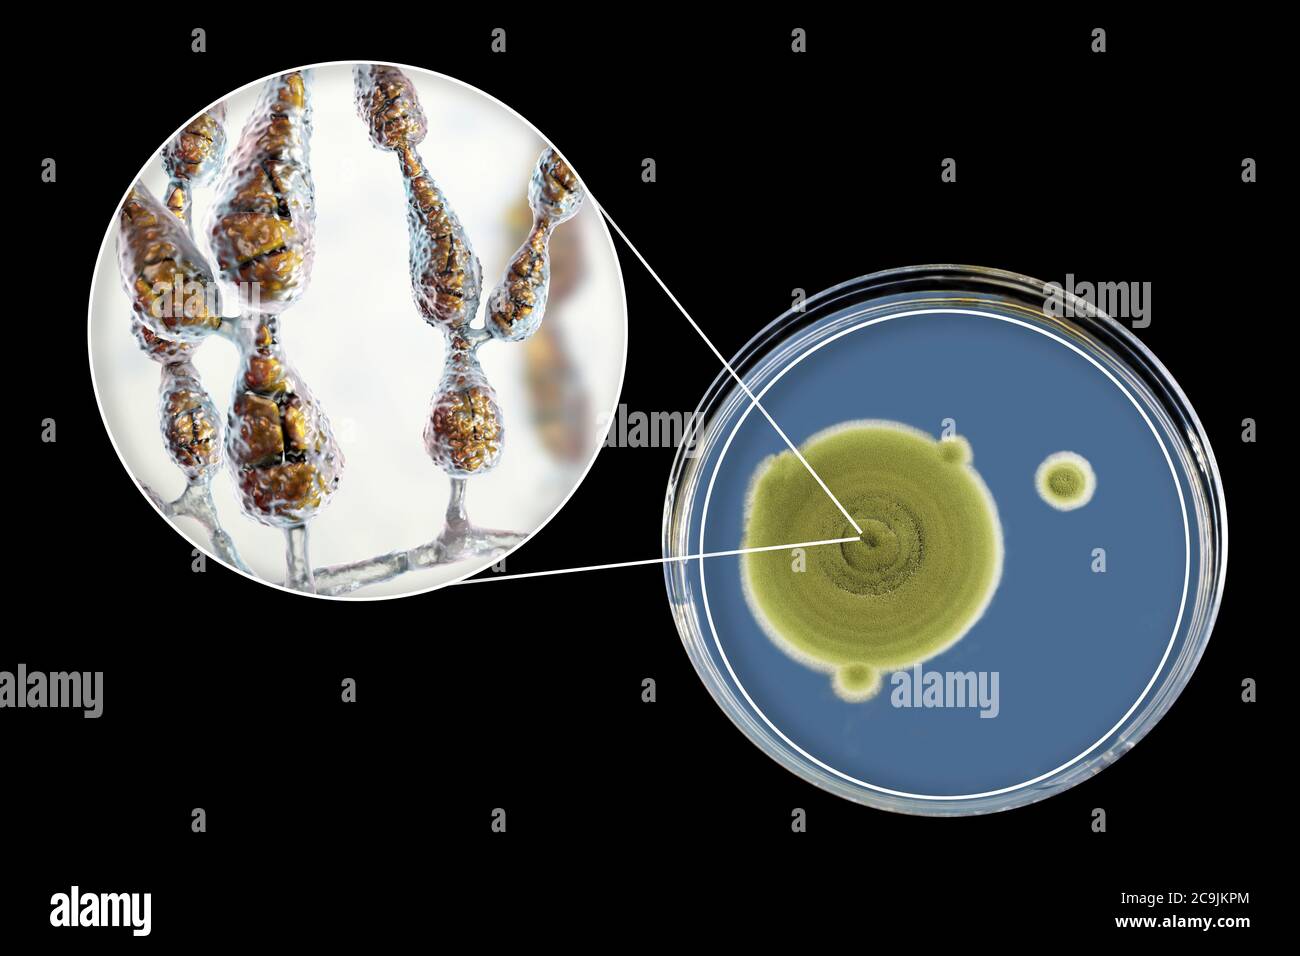 Filamentöser allergischer Pilz Alternaria alternata, Computerdarstellung der Pilzmorphologie und Aufnahme von Pilzkolonien auf Sabouraud Dextrose Stockfoto